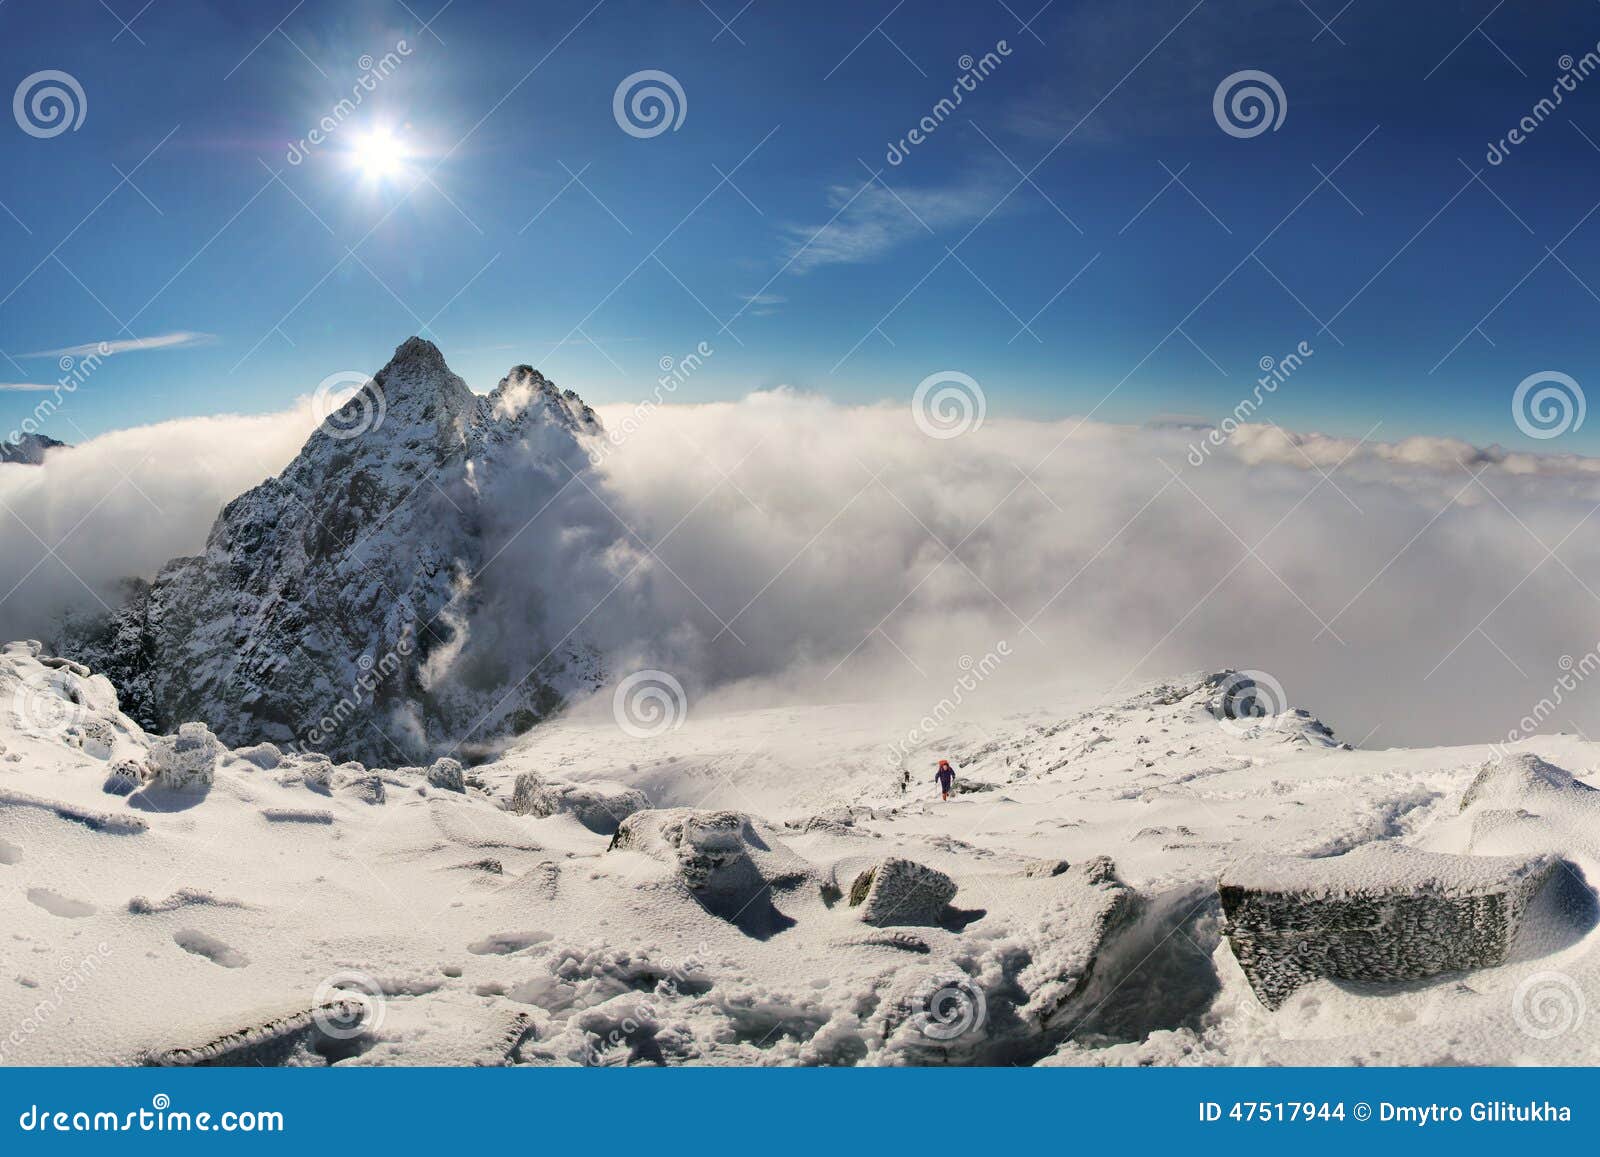 alpinist climbing on rysy mountain peak in high tatras. slovakia